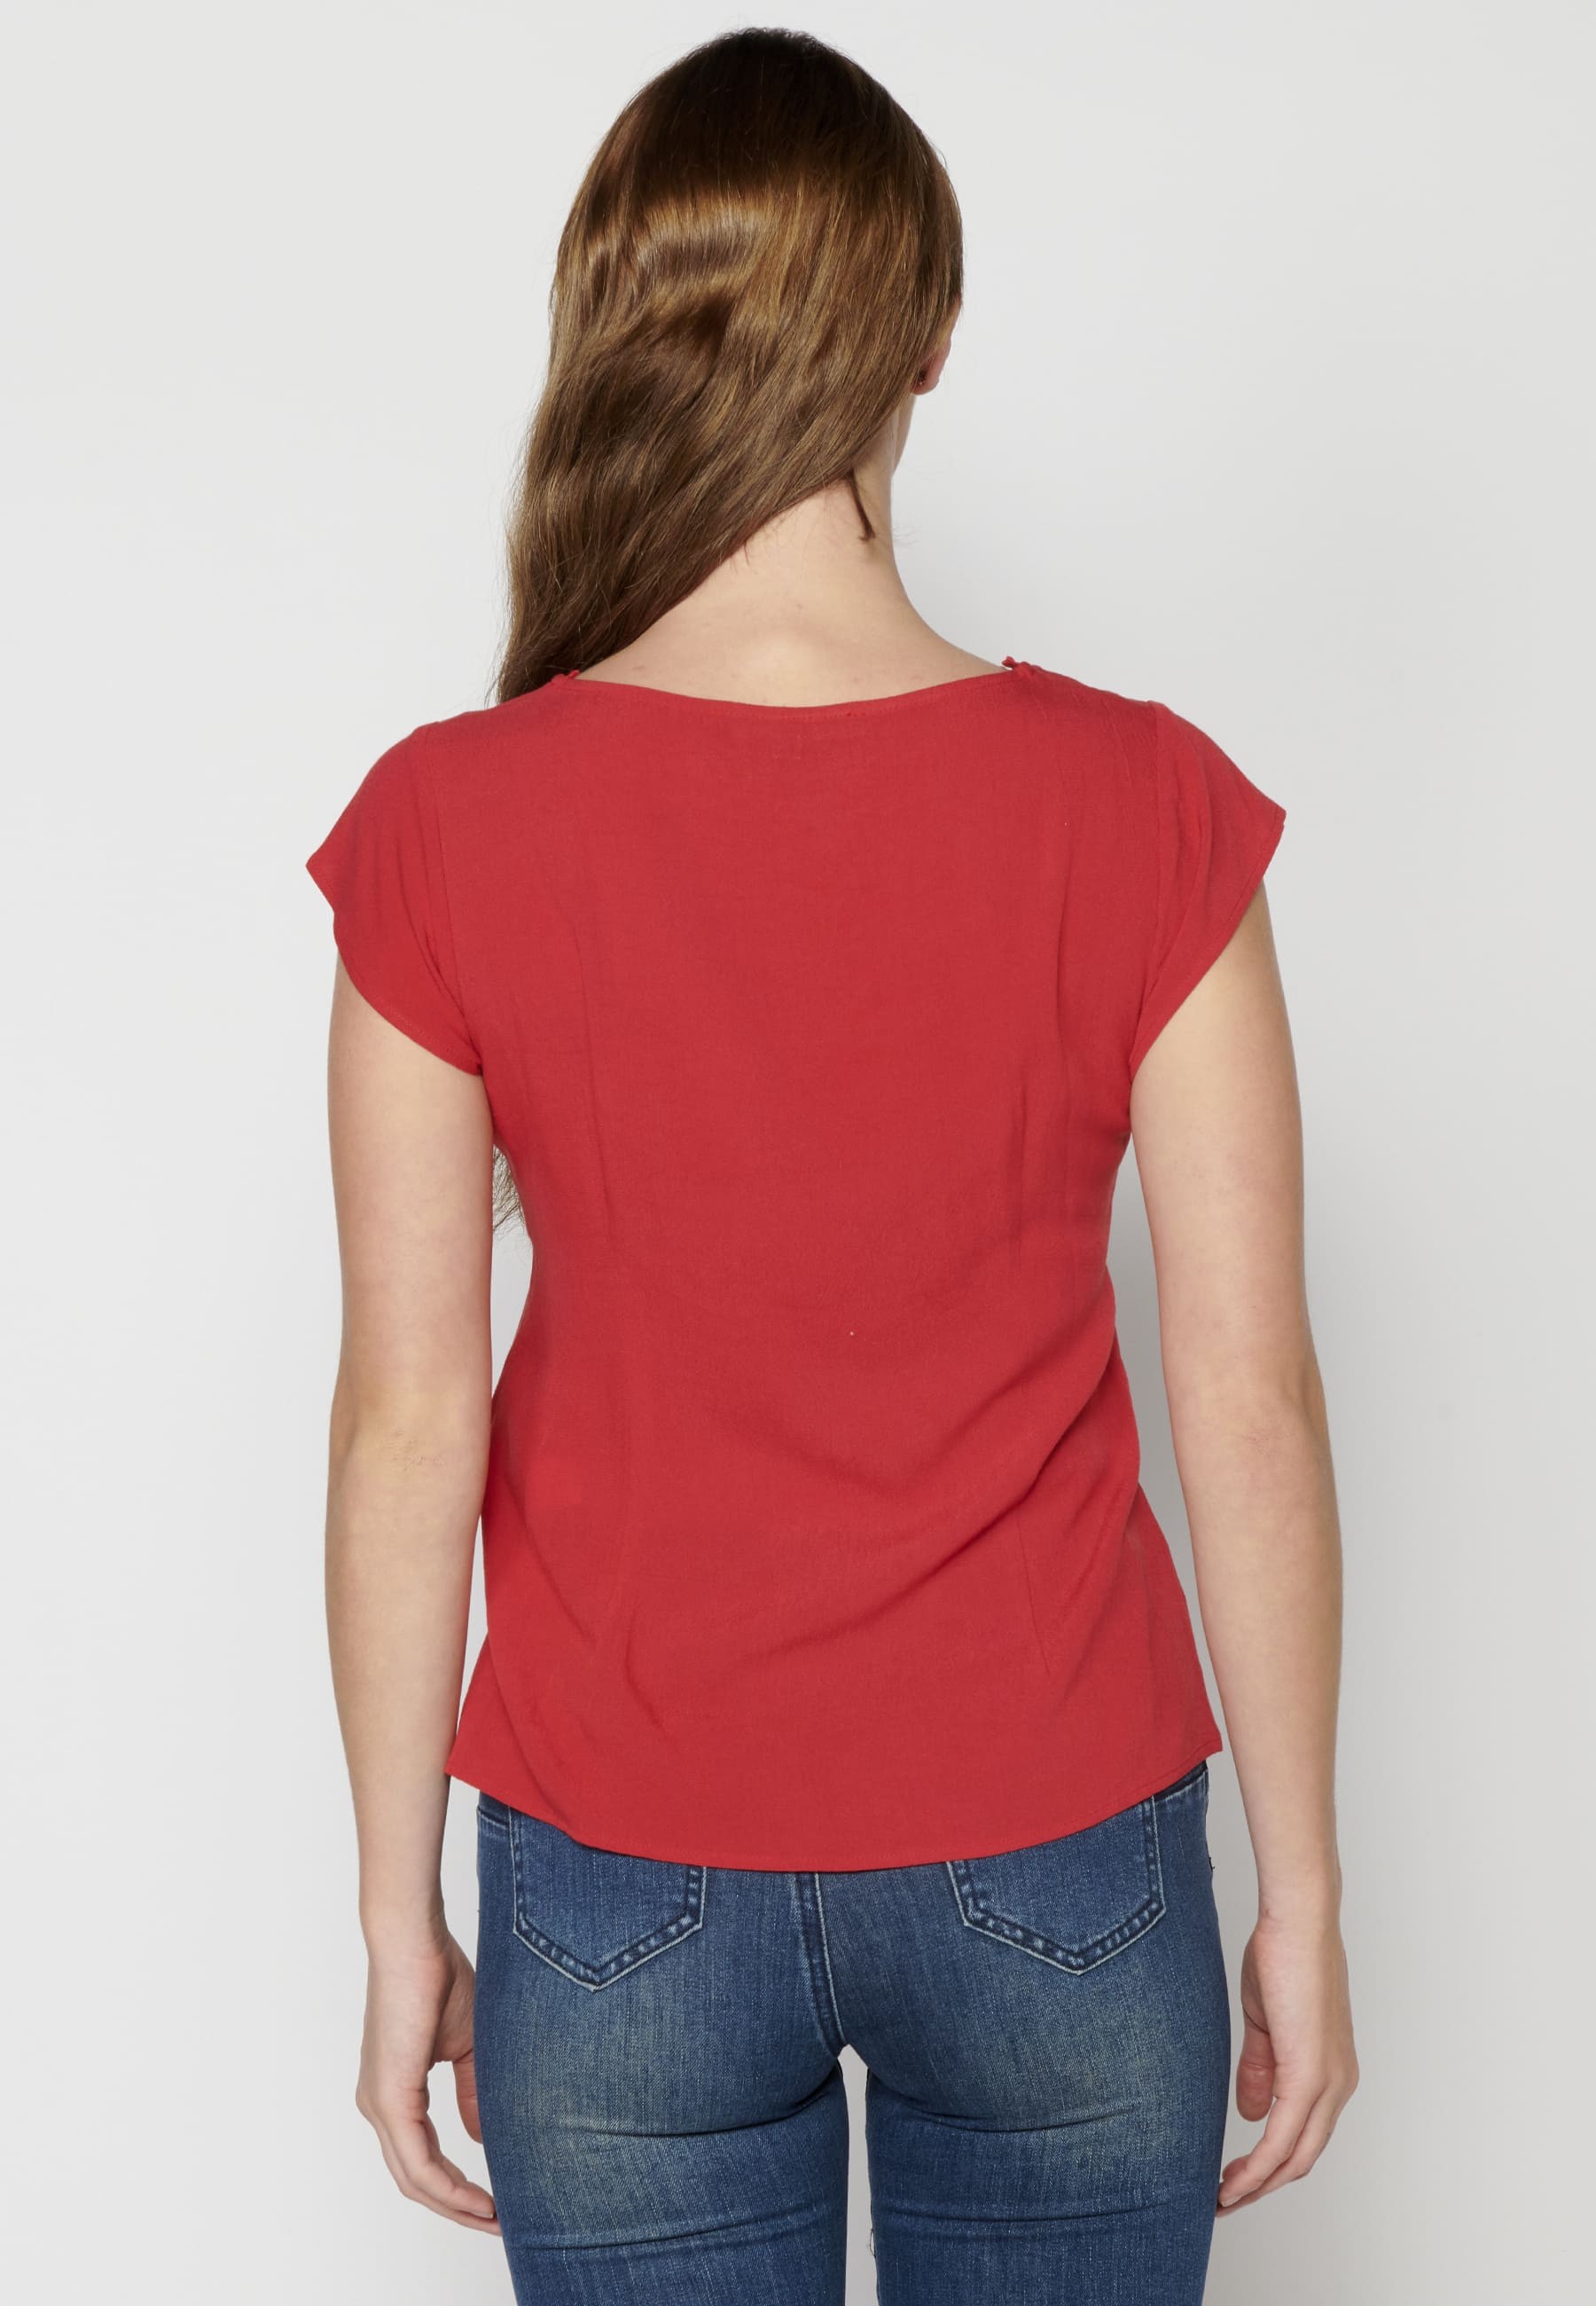 Blusa manga corta con detalles florales de Color Rojo para Mujer